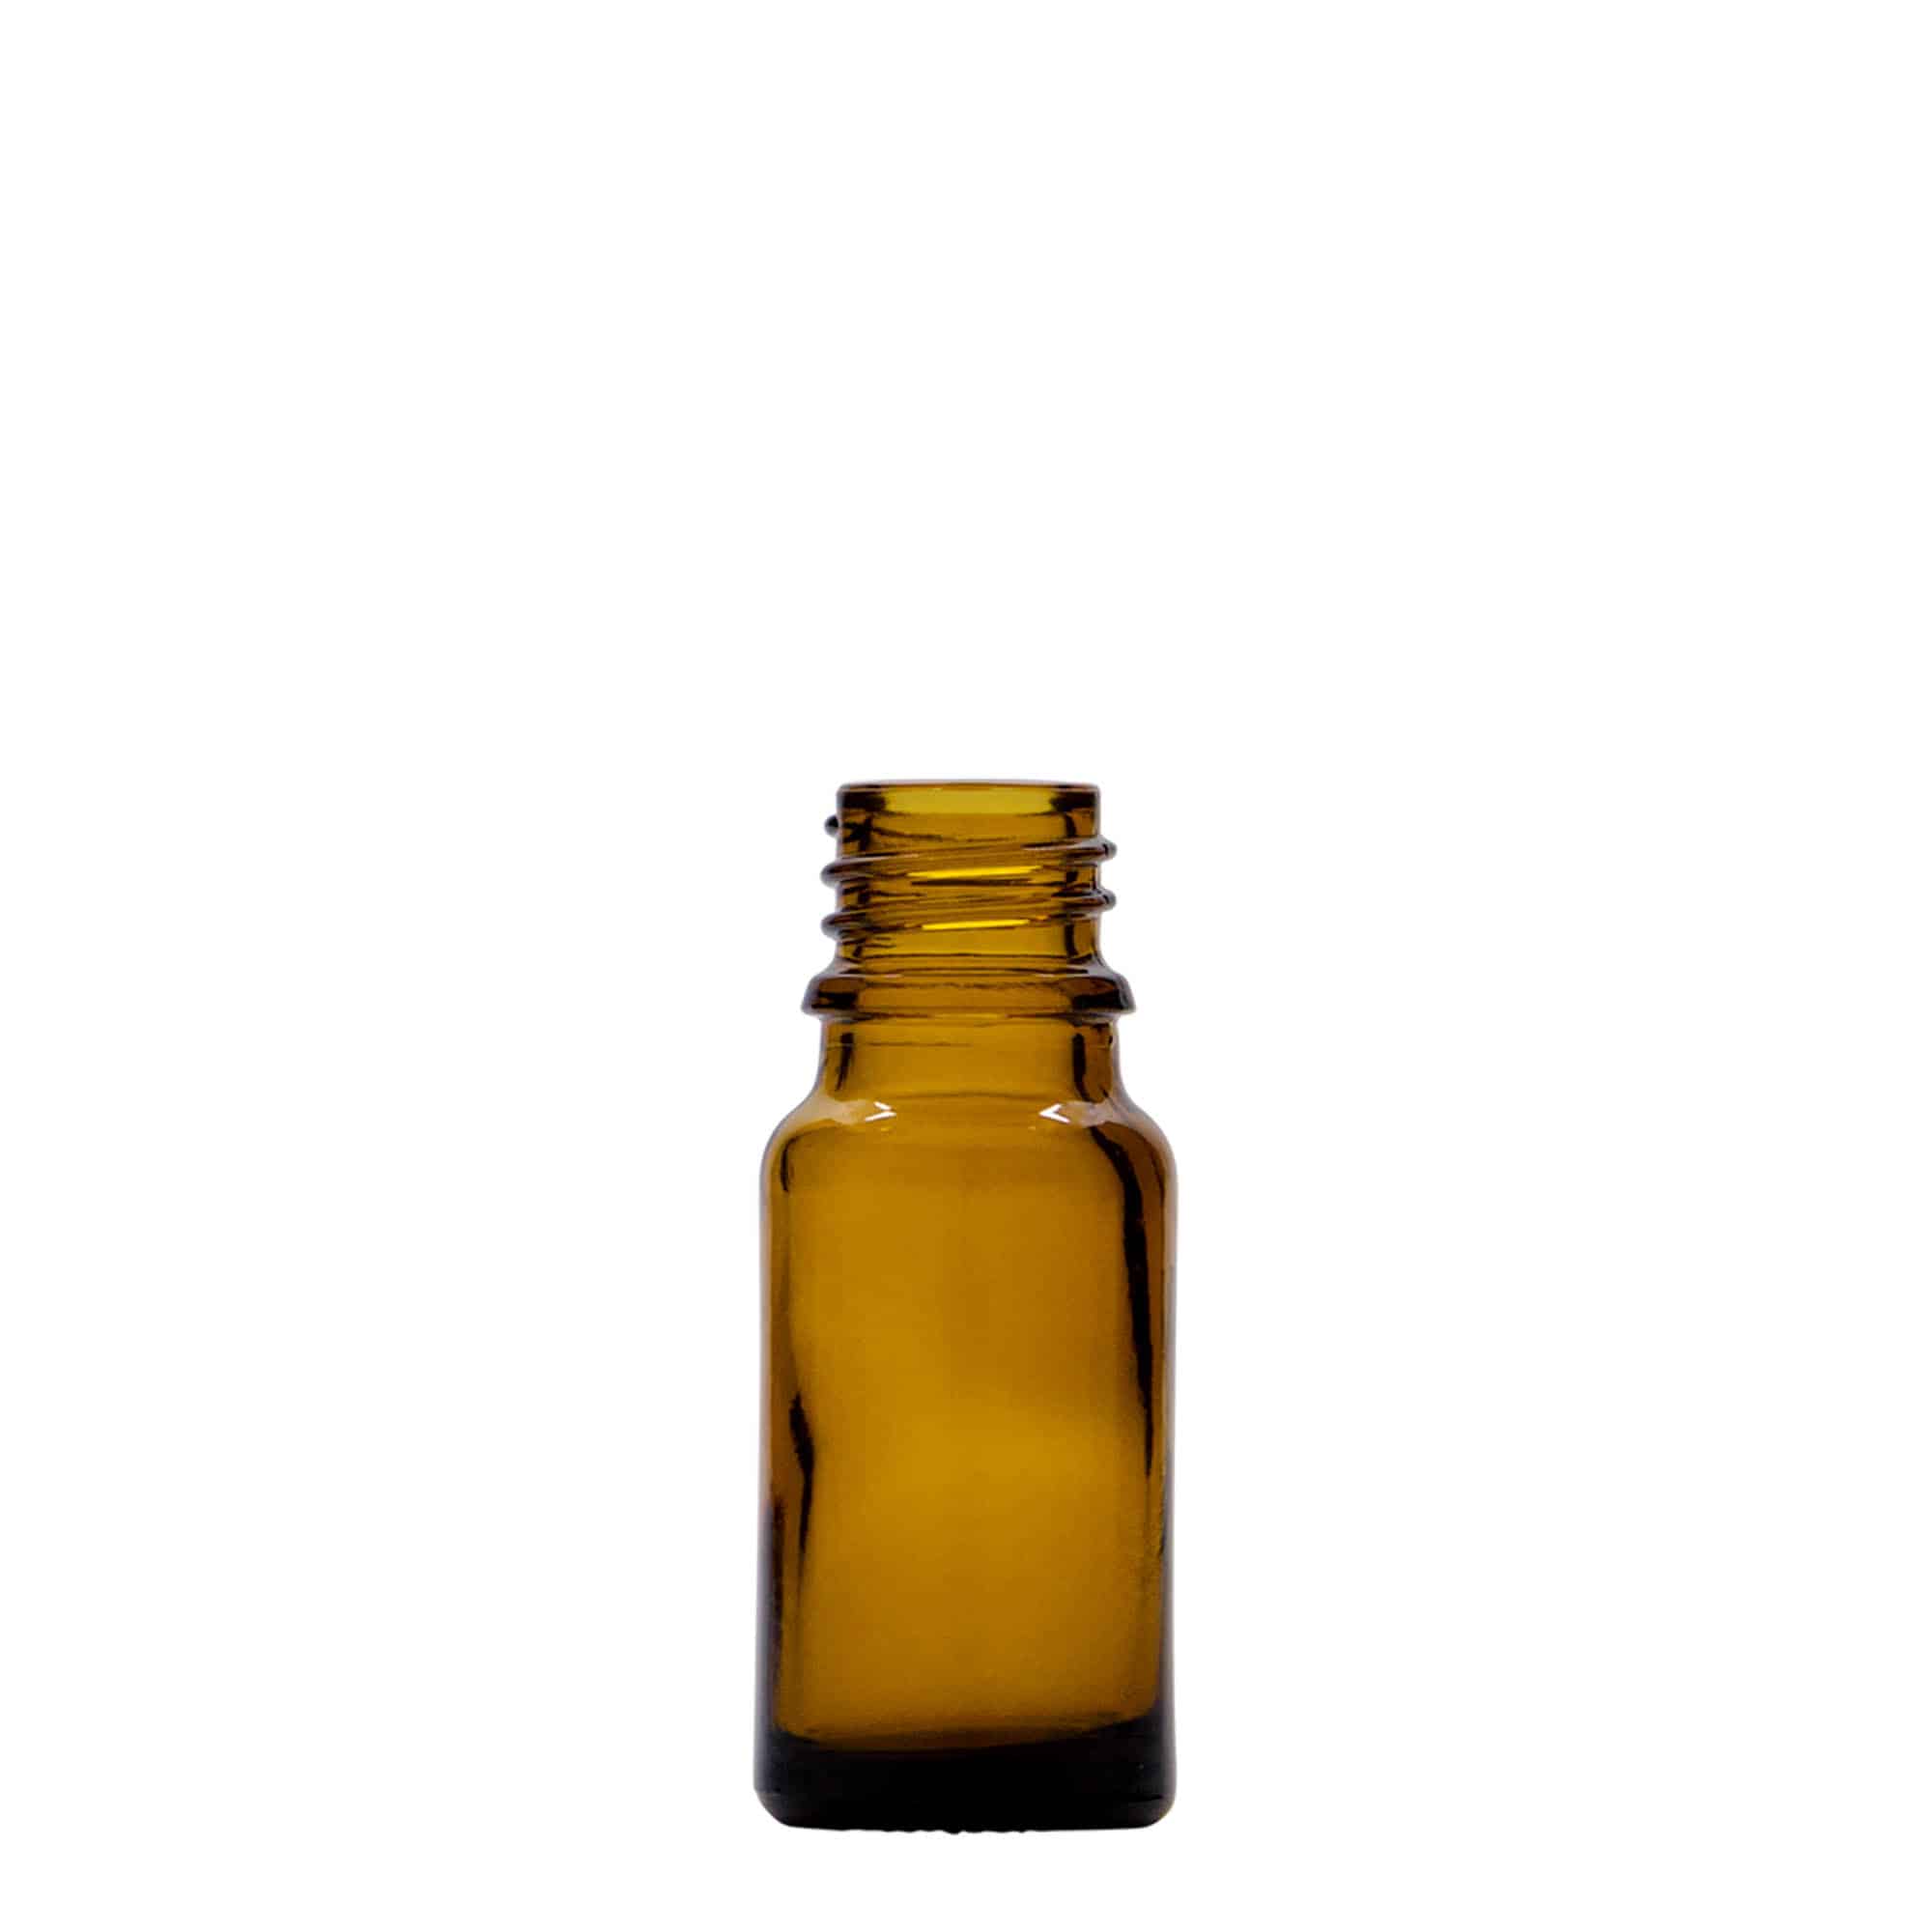 10 ml Flacone spray farmaceutico, vetro, marrone, imboccatura: DIN 18